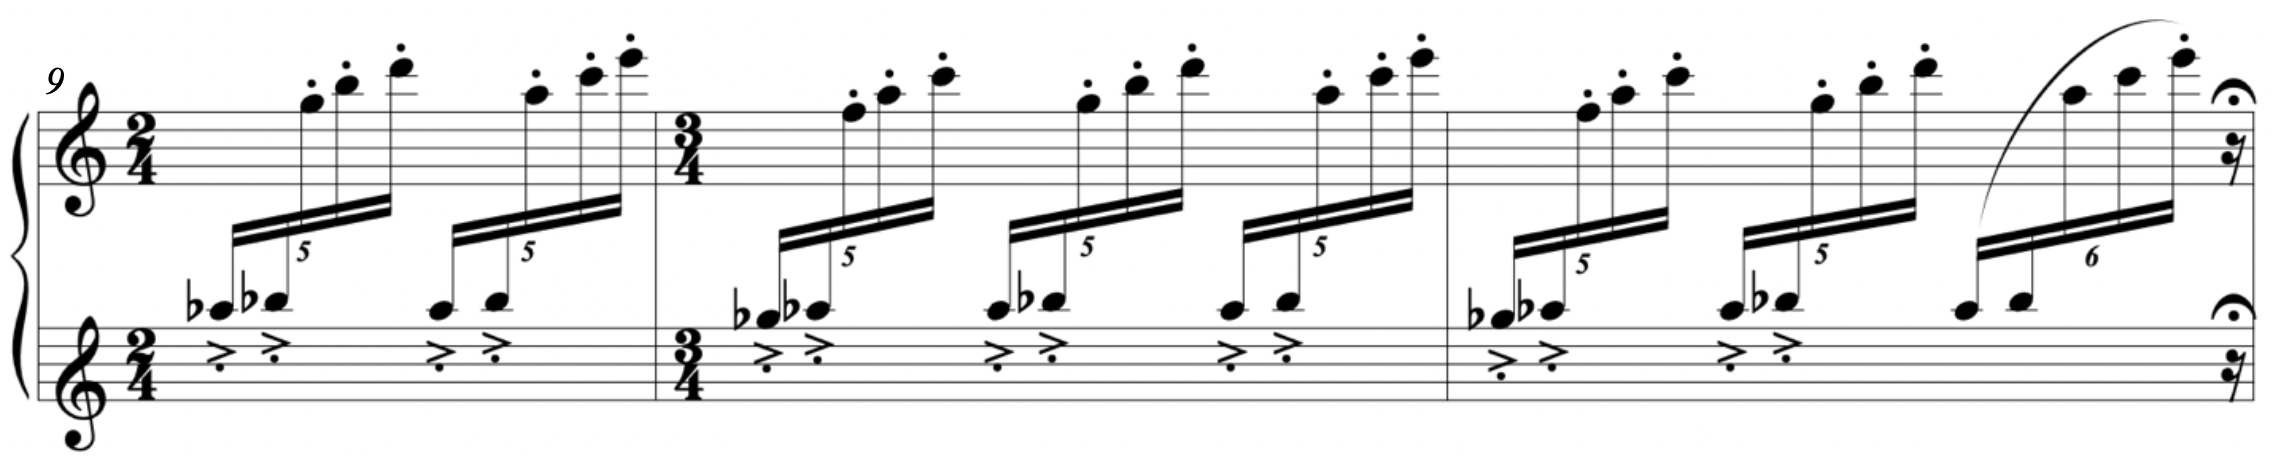 Score of Villa-Lobos, A prólo do bébé, "O polichinelo"